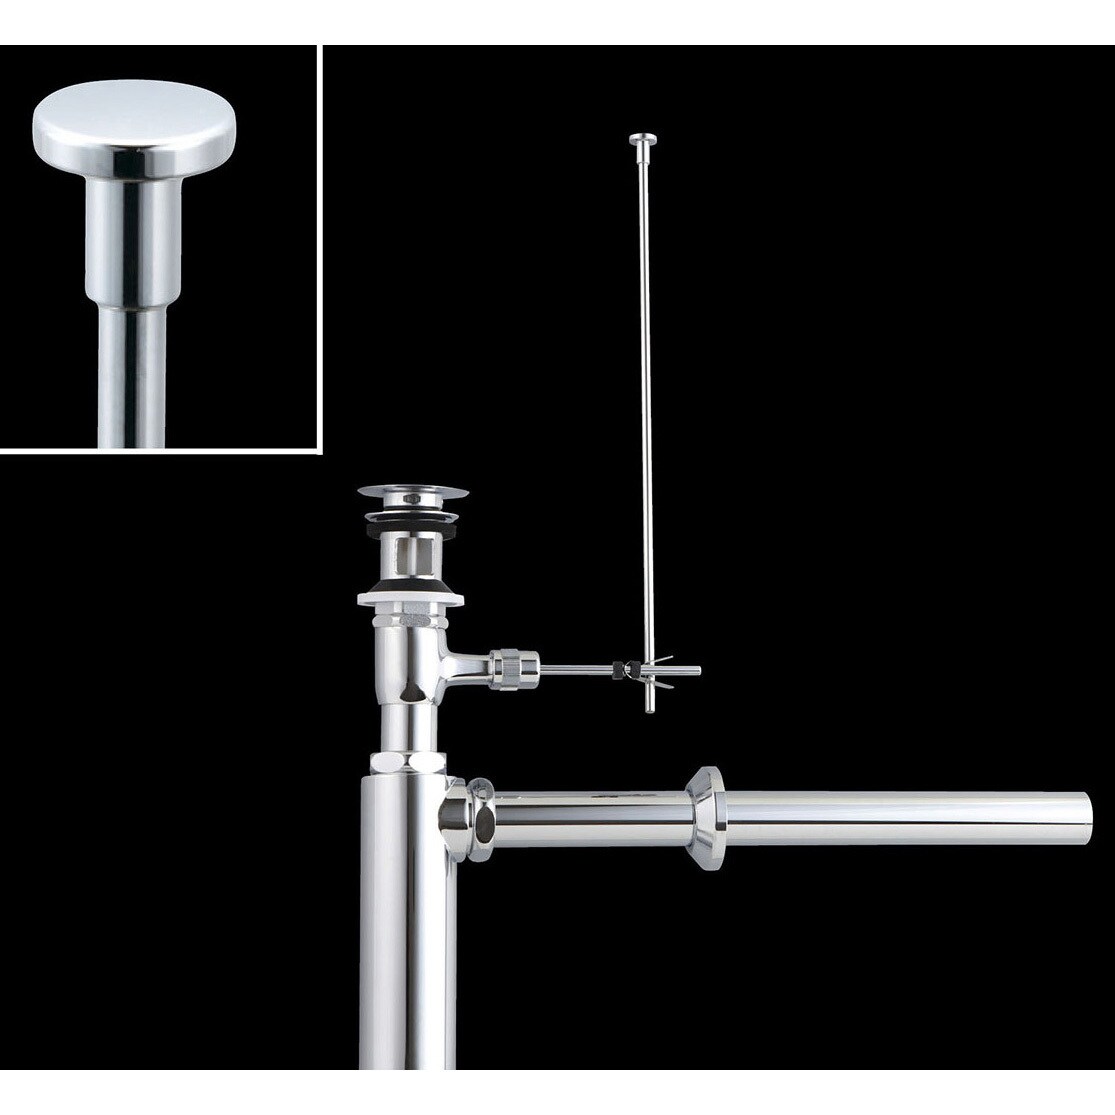 リクシル 洗面器・手洗器用セット金具 ポップアップ式排水金具(呼び径32mm) 床排水Sトラップ(排水口カバー付) LIXIL - 3